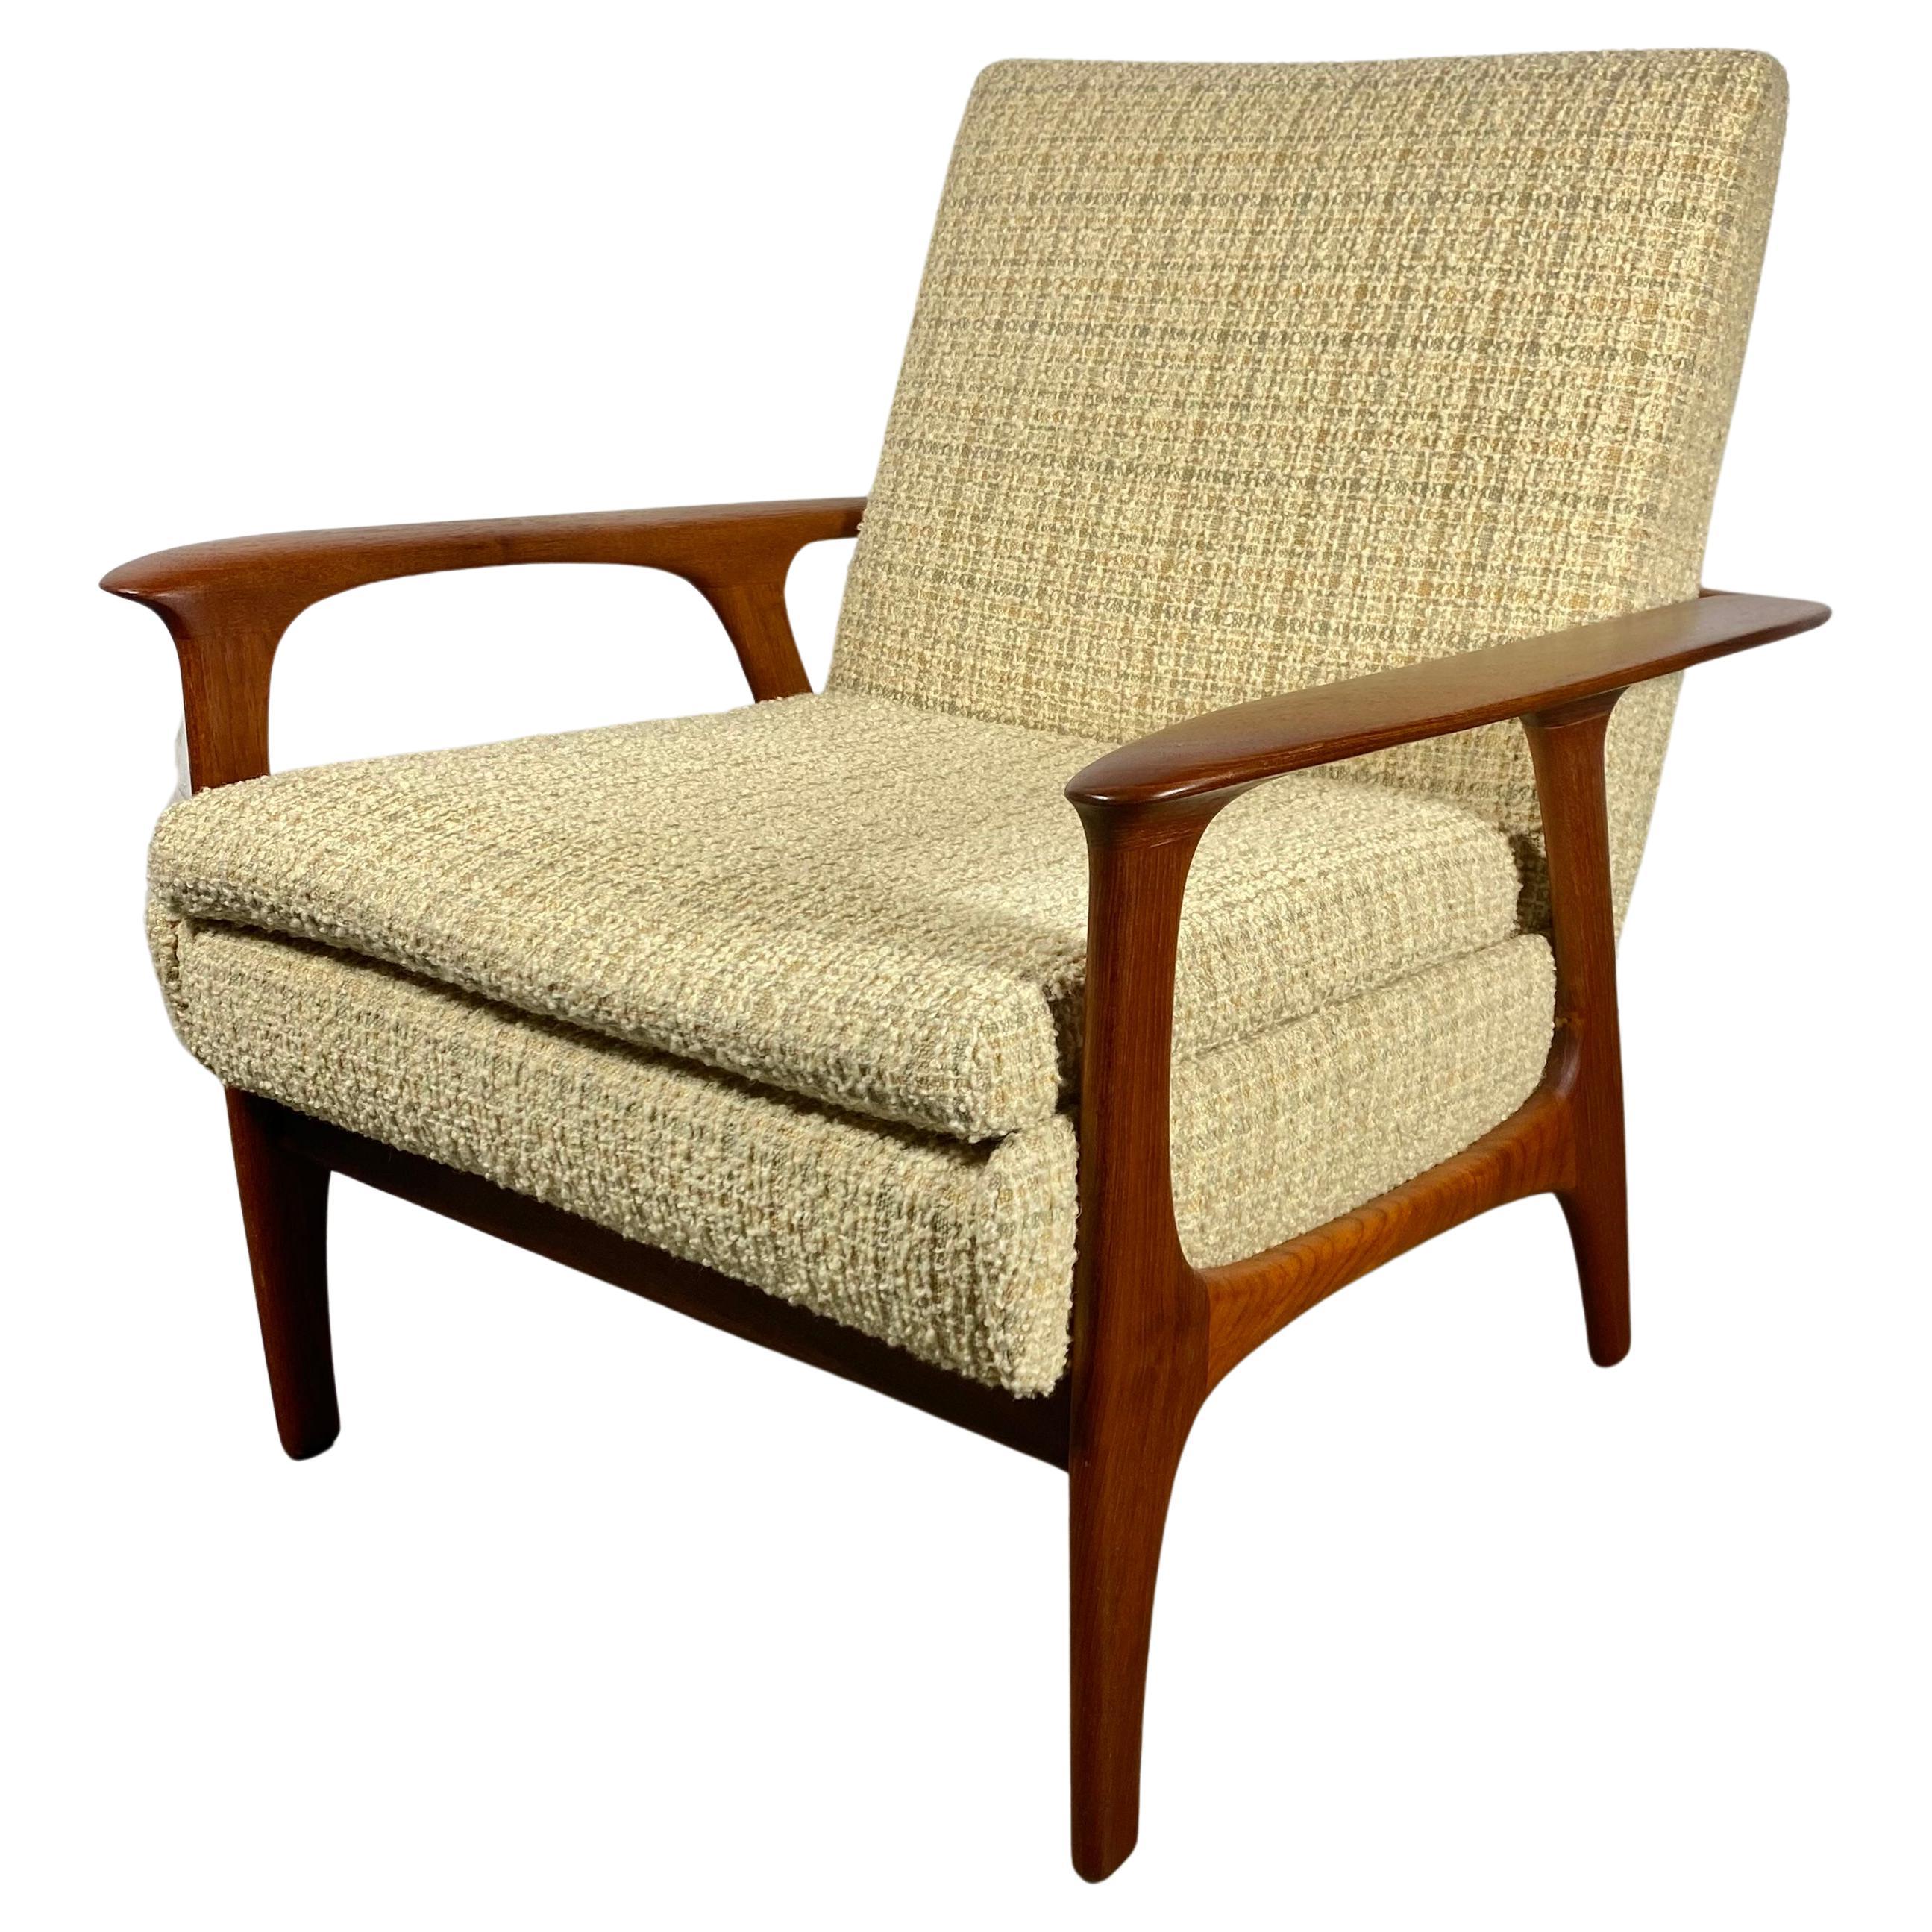 Classic Scandinavian Modern Teak Lounge Chair , manner Of Hans Wegner